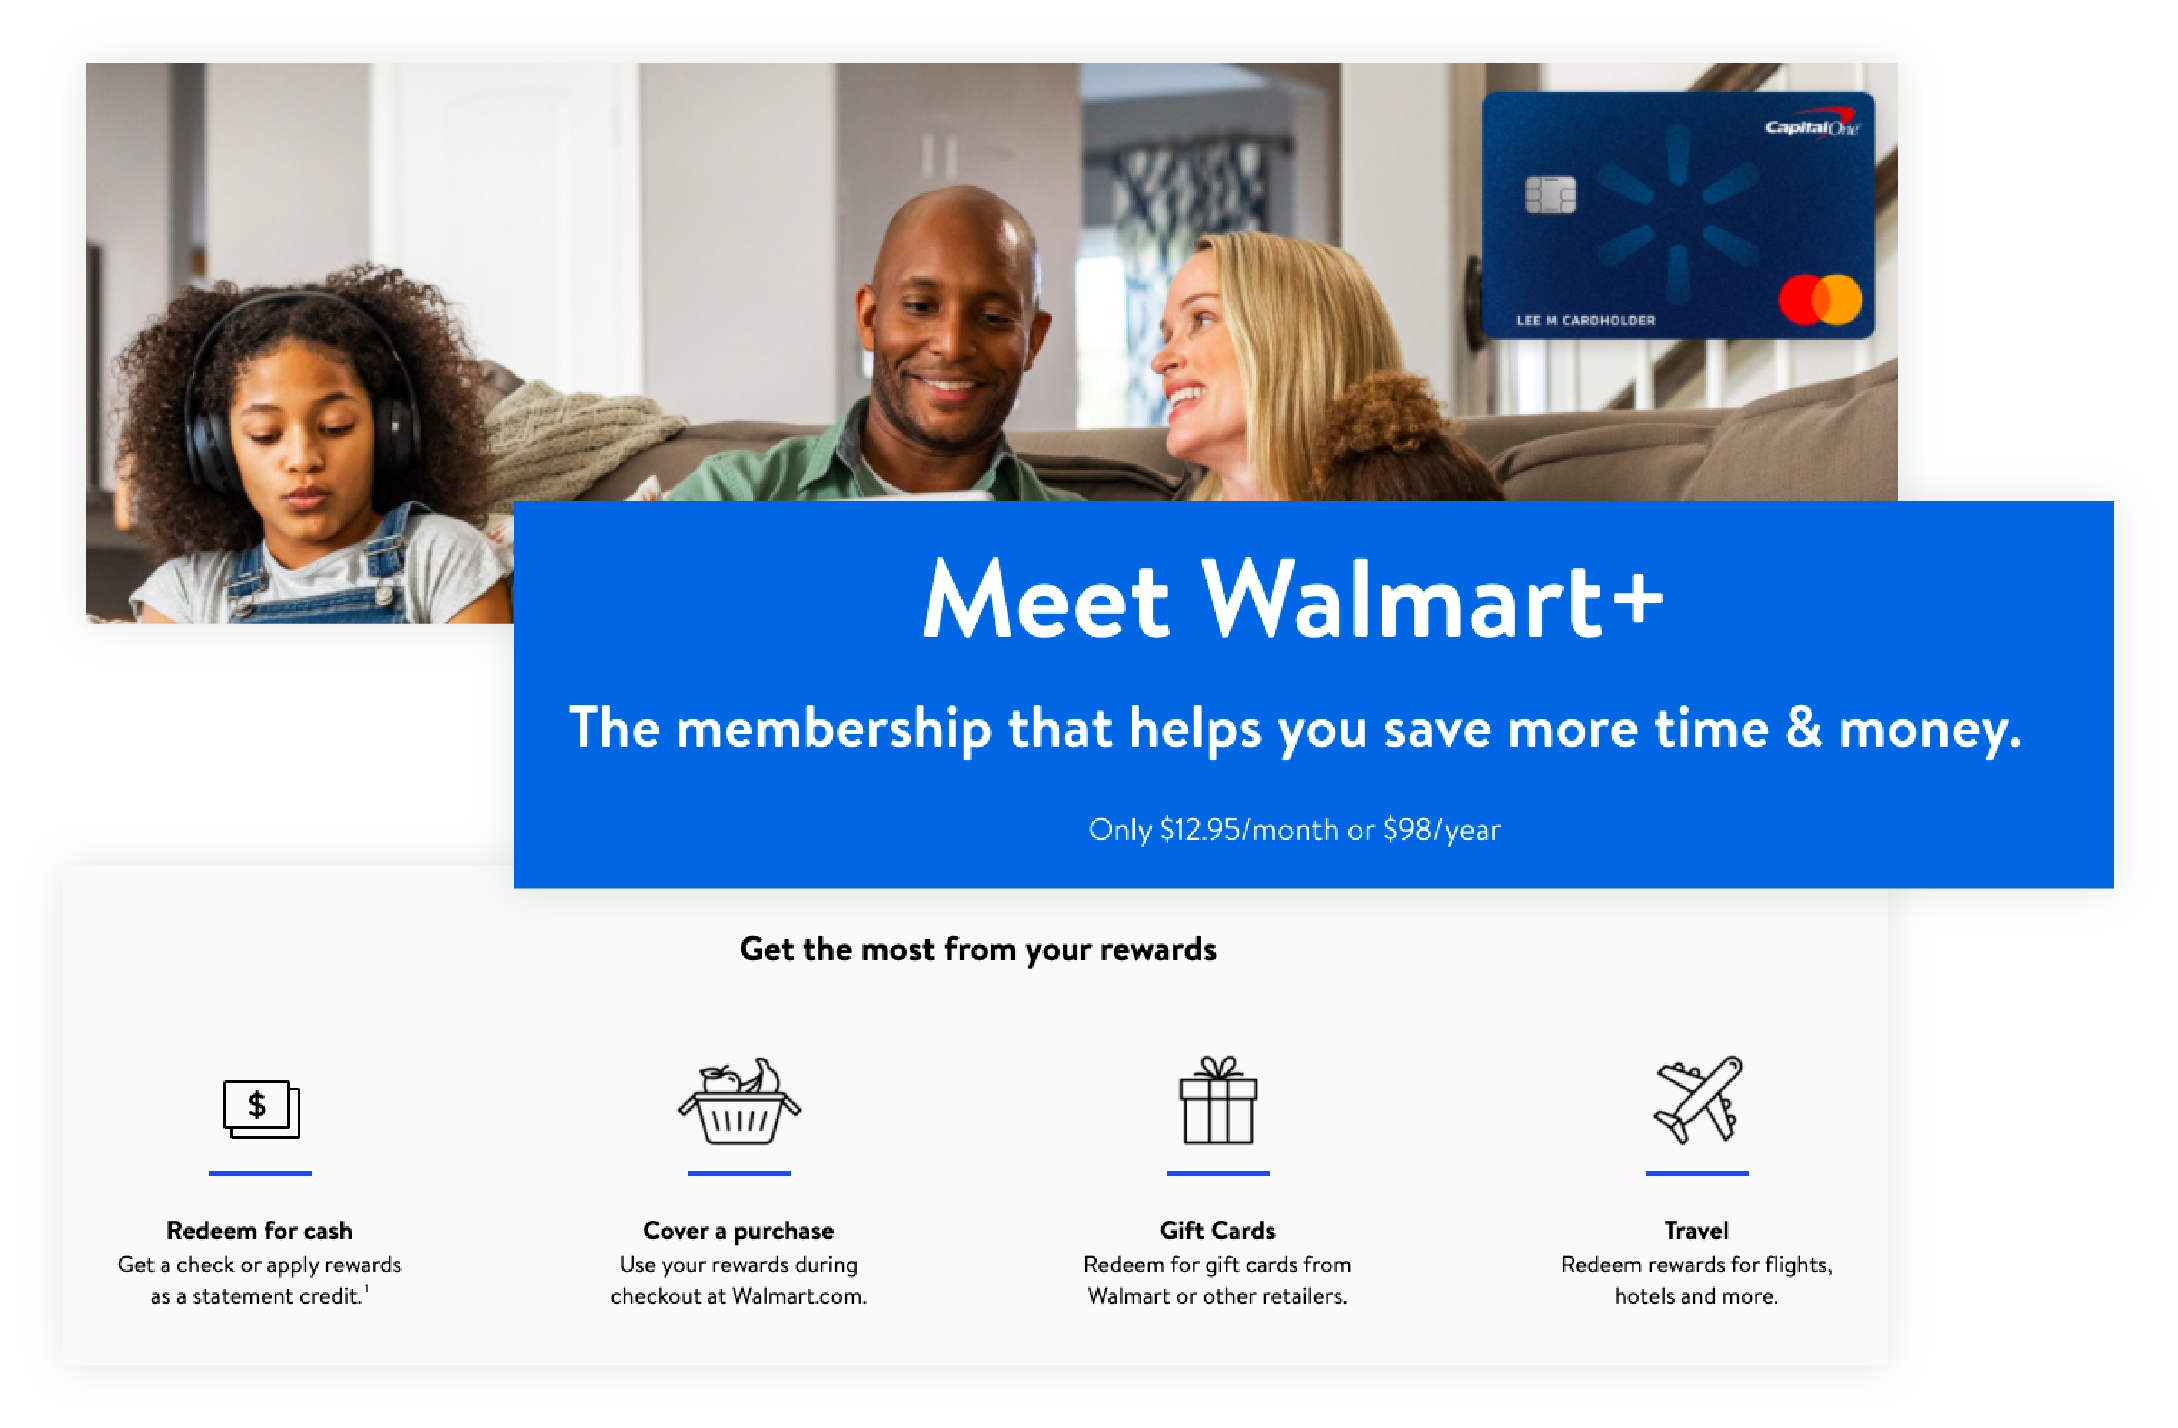 Aperçu des avantages des membres du programme de récompenses Walmart+